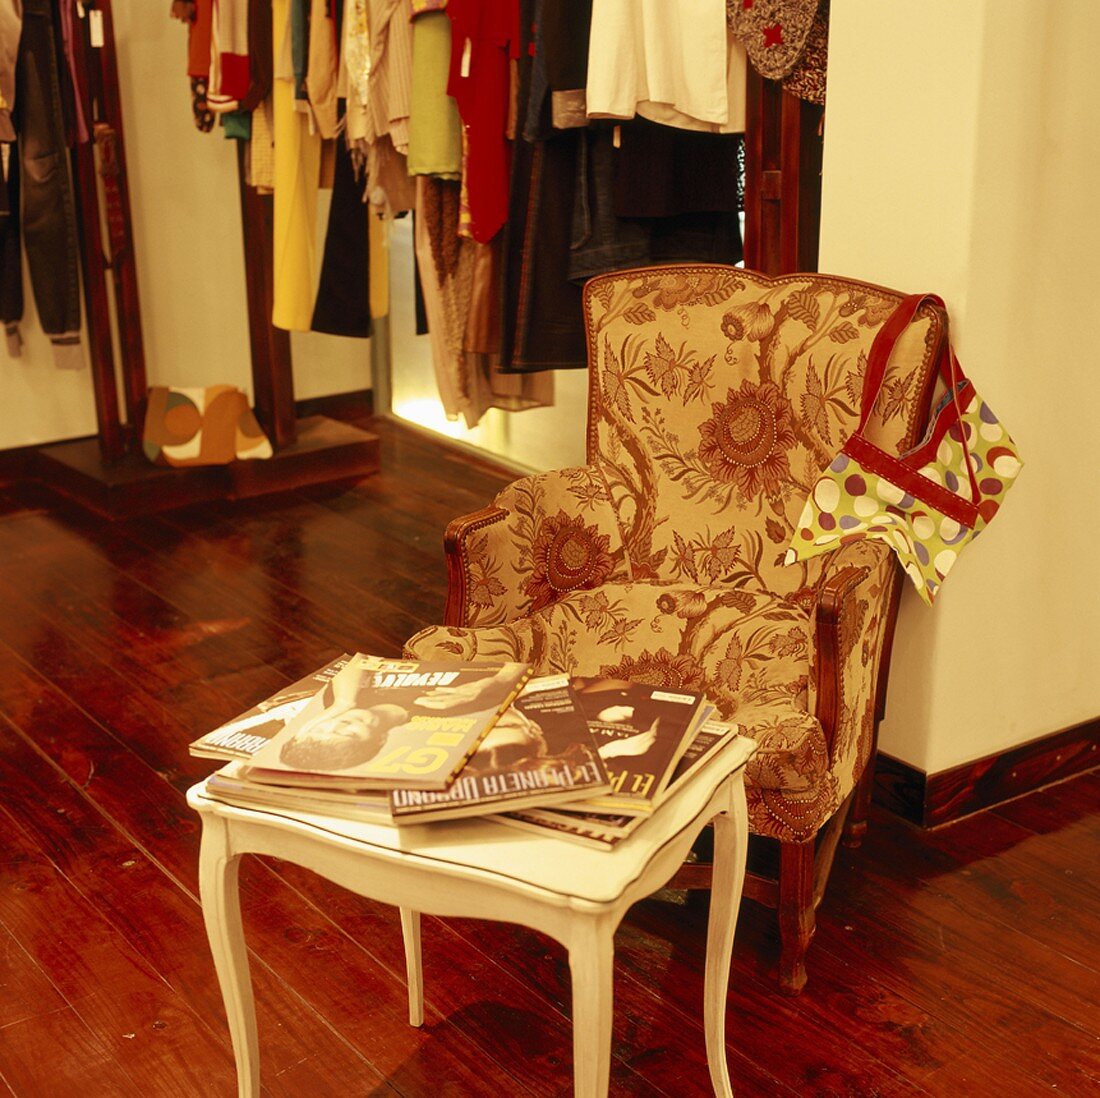 Sessel und Beistelltischen mit Zeitschriften in einem Modegeschäft